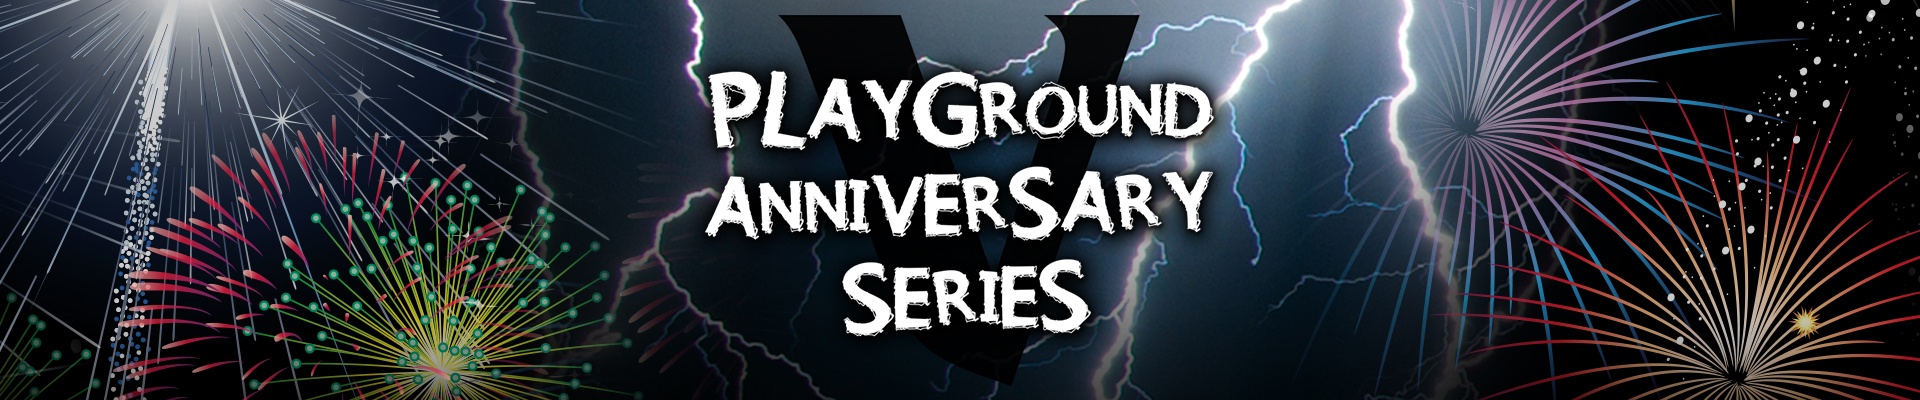 Playground Anniversary Series 2015